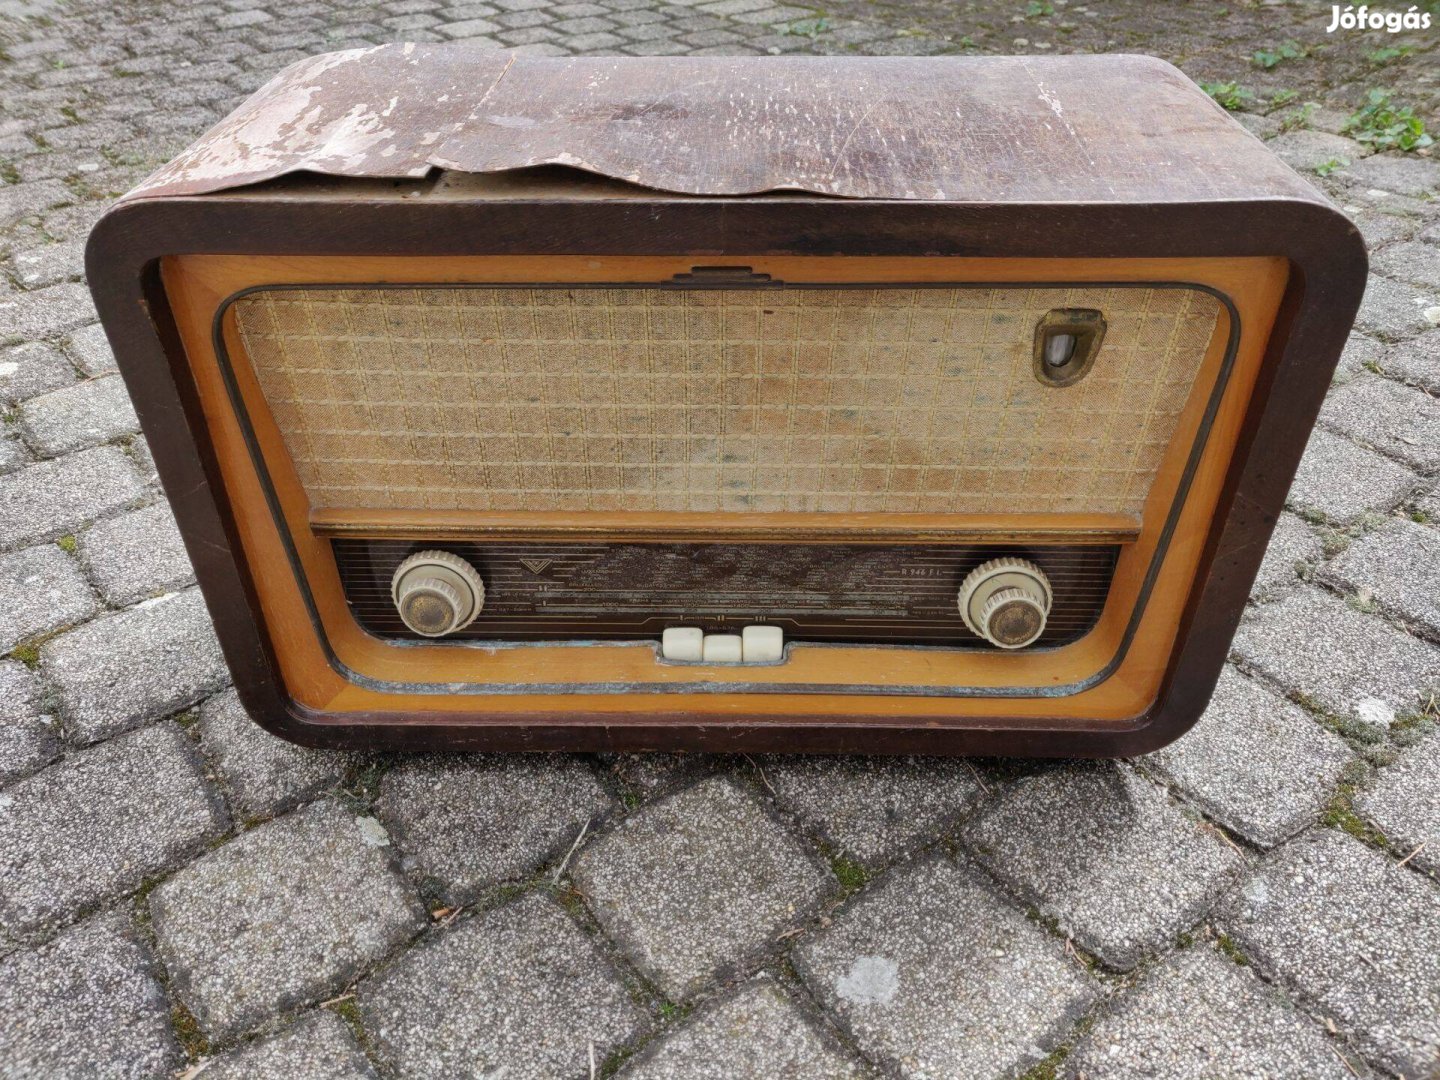 Vadásztölténygyár R 946 FI Szimfónia rádió, régiség, retro